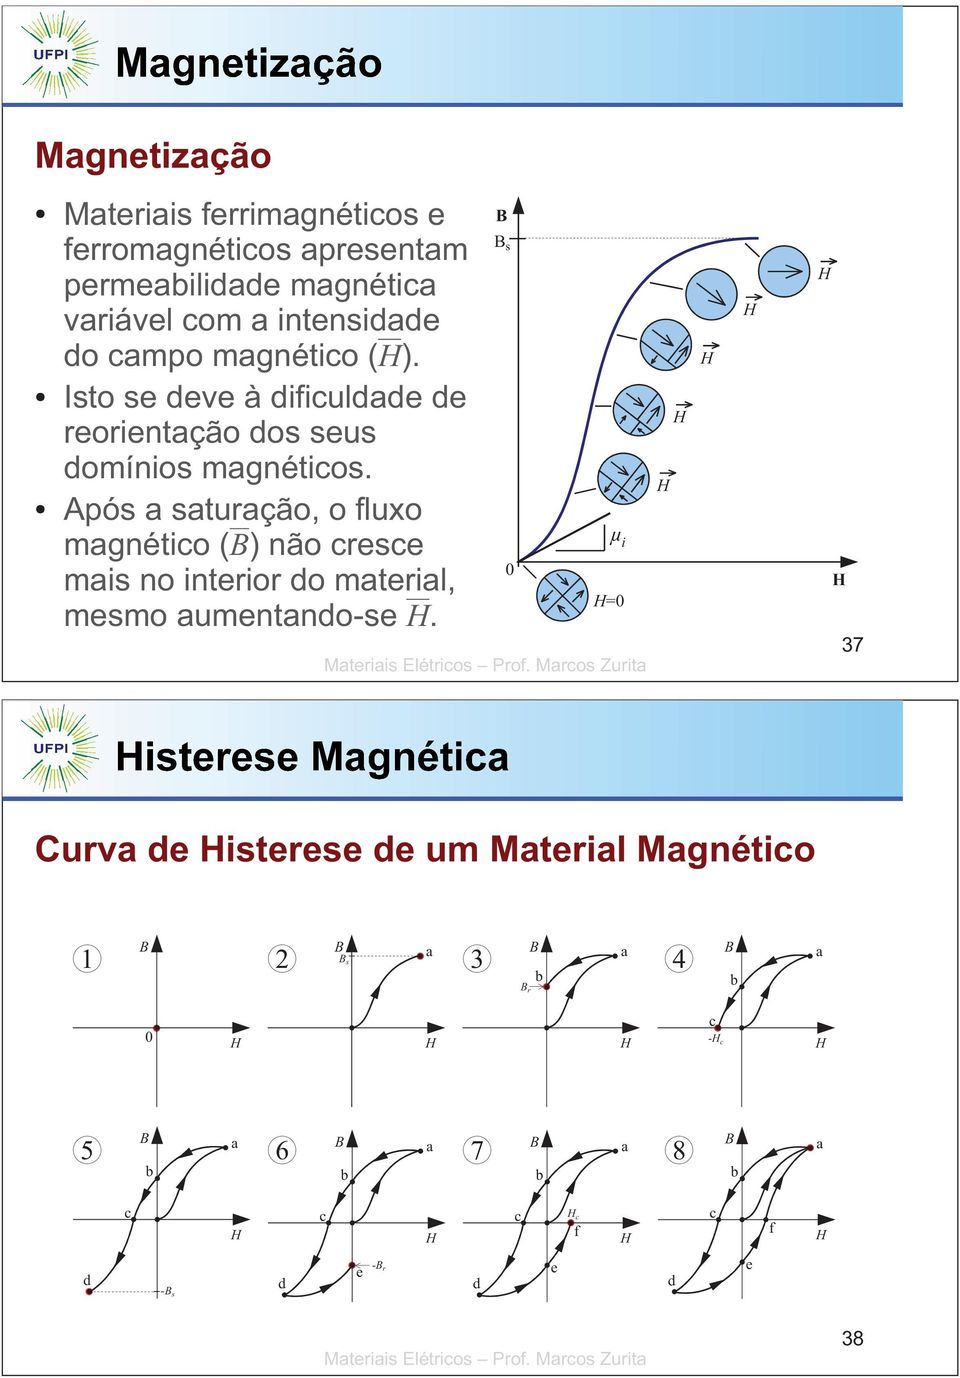 Após a saturação, o fluxo magnético () não cresce mais no interior do material, mesmo aumentando-se.